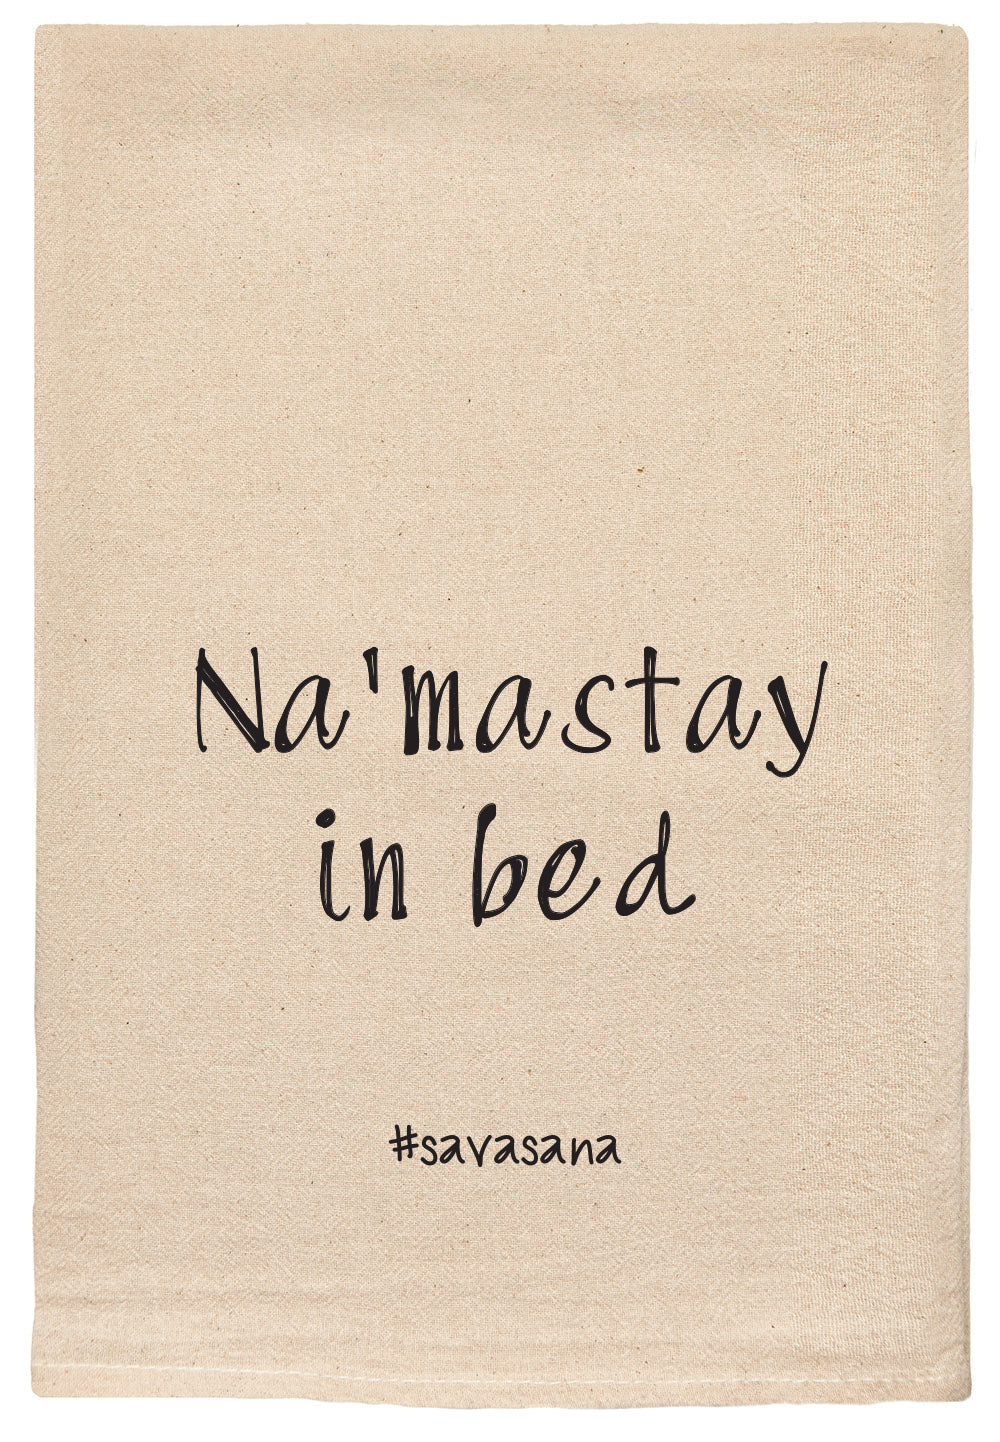 Na'mastay in bed